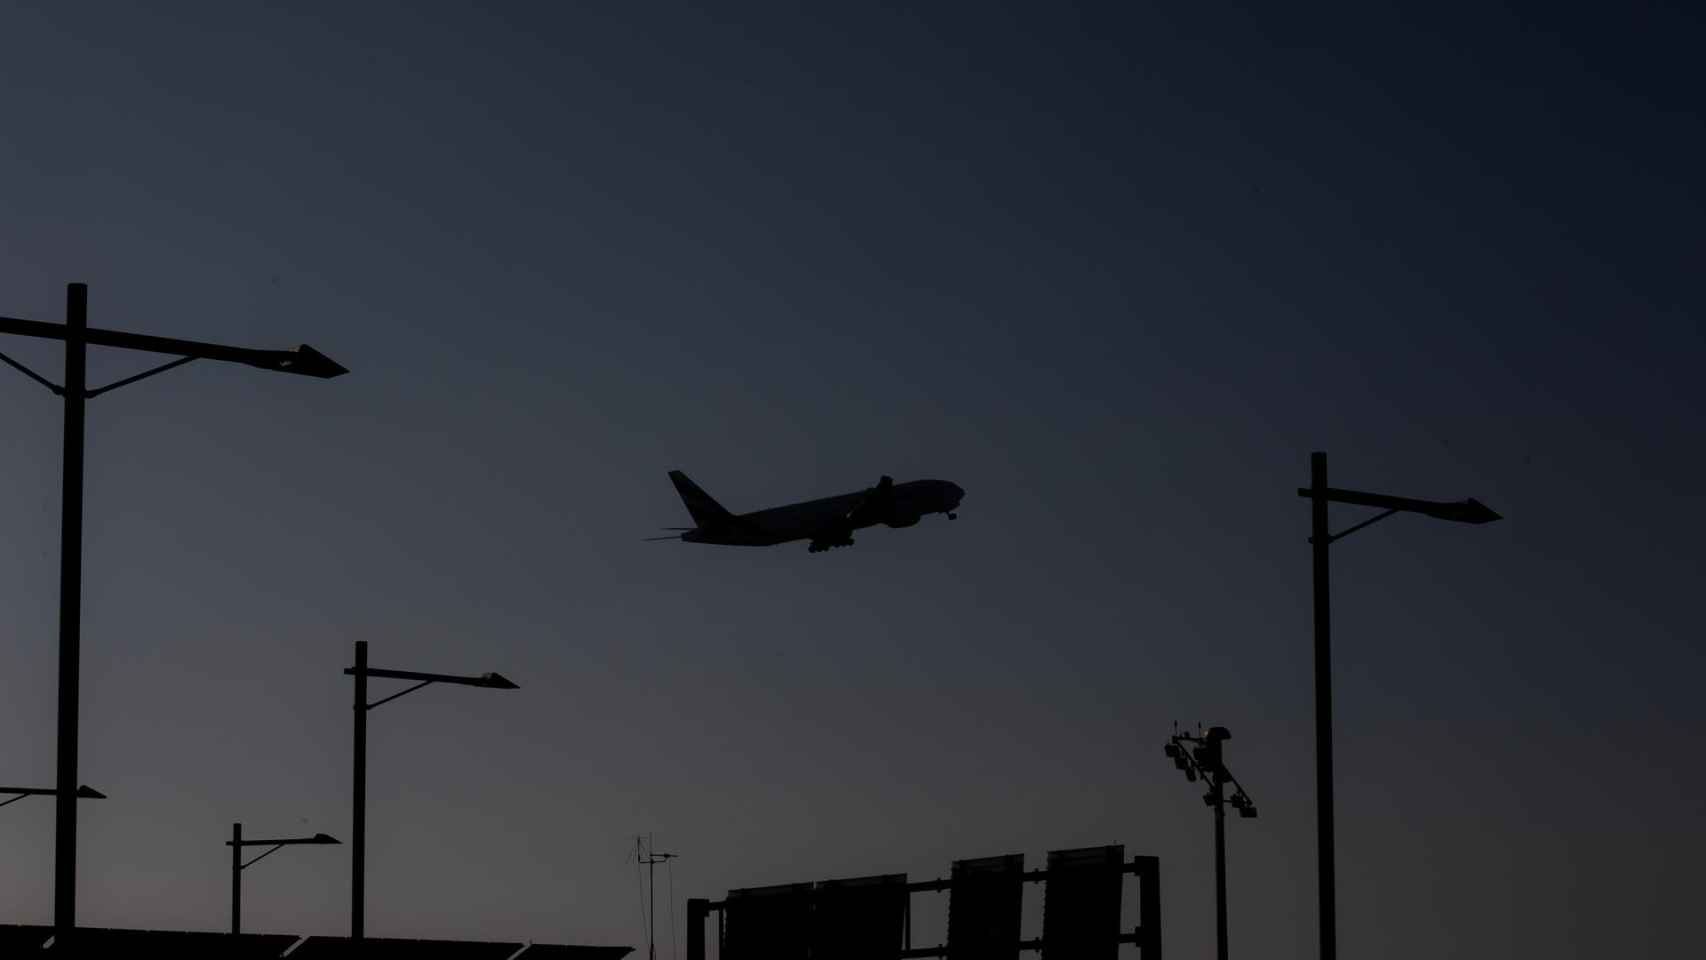 Un avión sobrevuela el Aeropuerto de Barcelona-El Prat